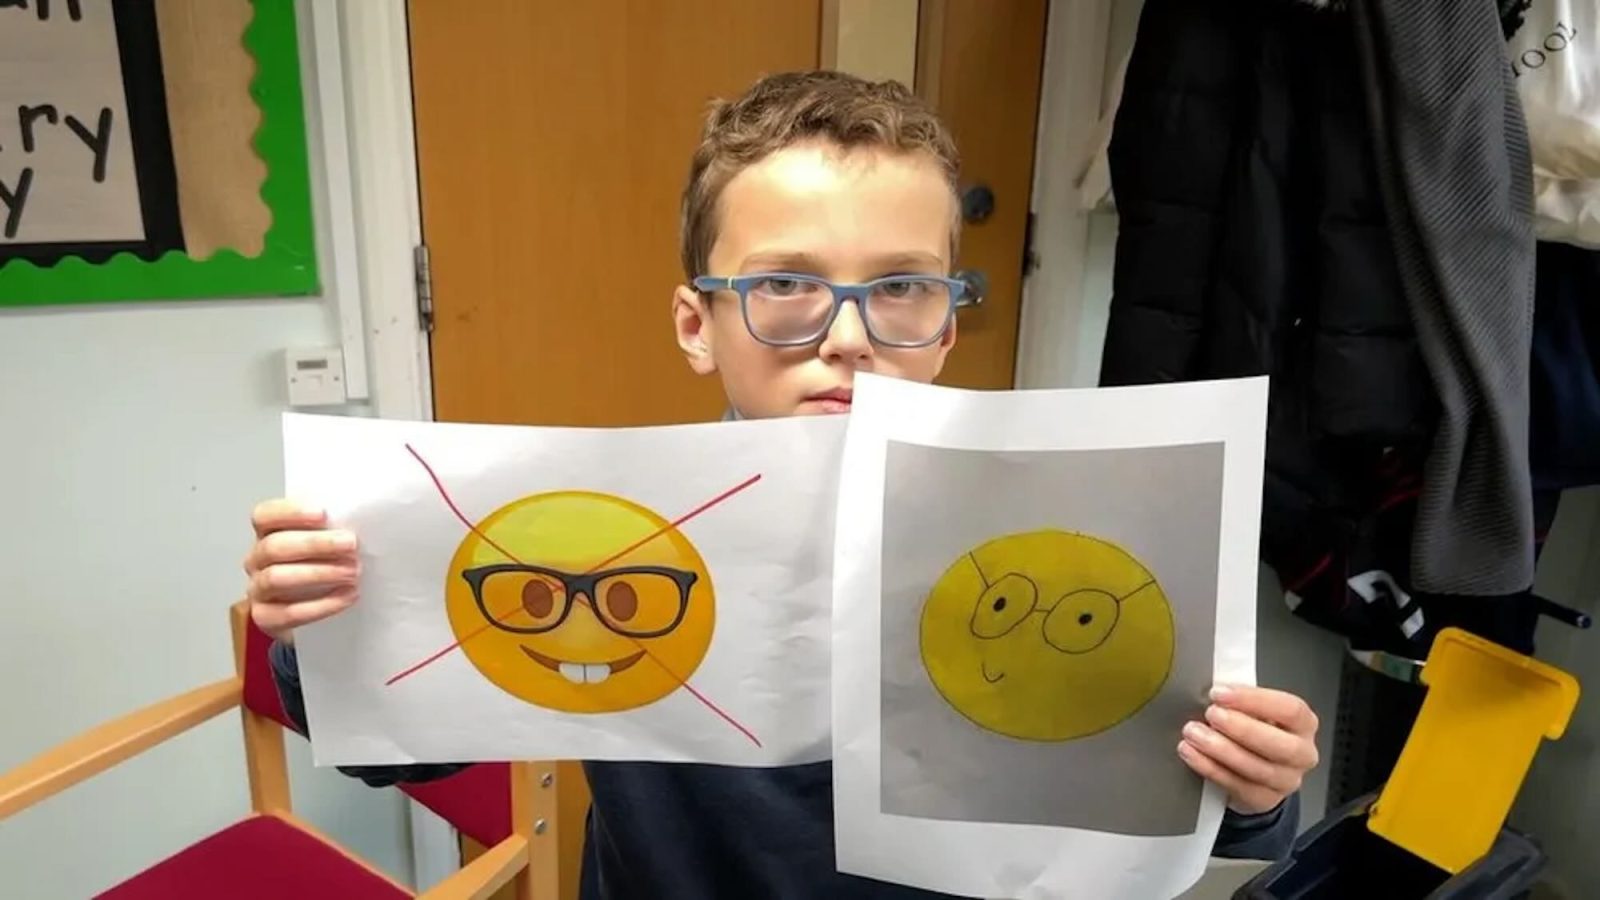 Ο 10χρονος Teddy ζητά από την Apple να επανασχεδιάσει το emoji «nerd face»: «Με κάνει να νιώθω λυπημένος και αναστατωμένος»